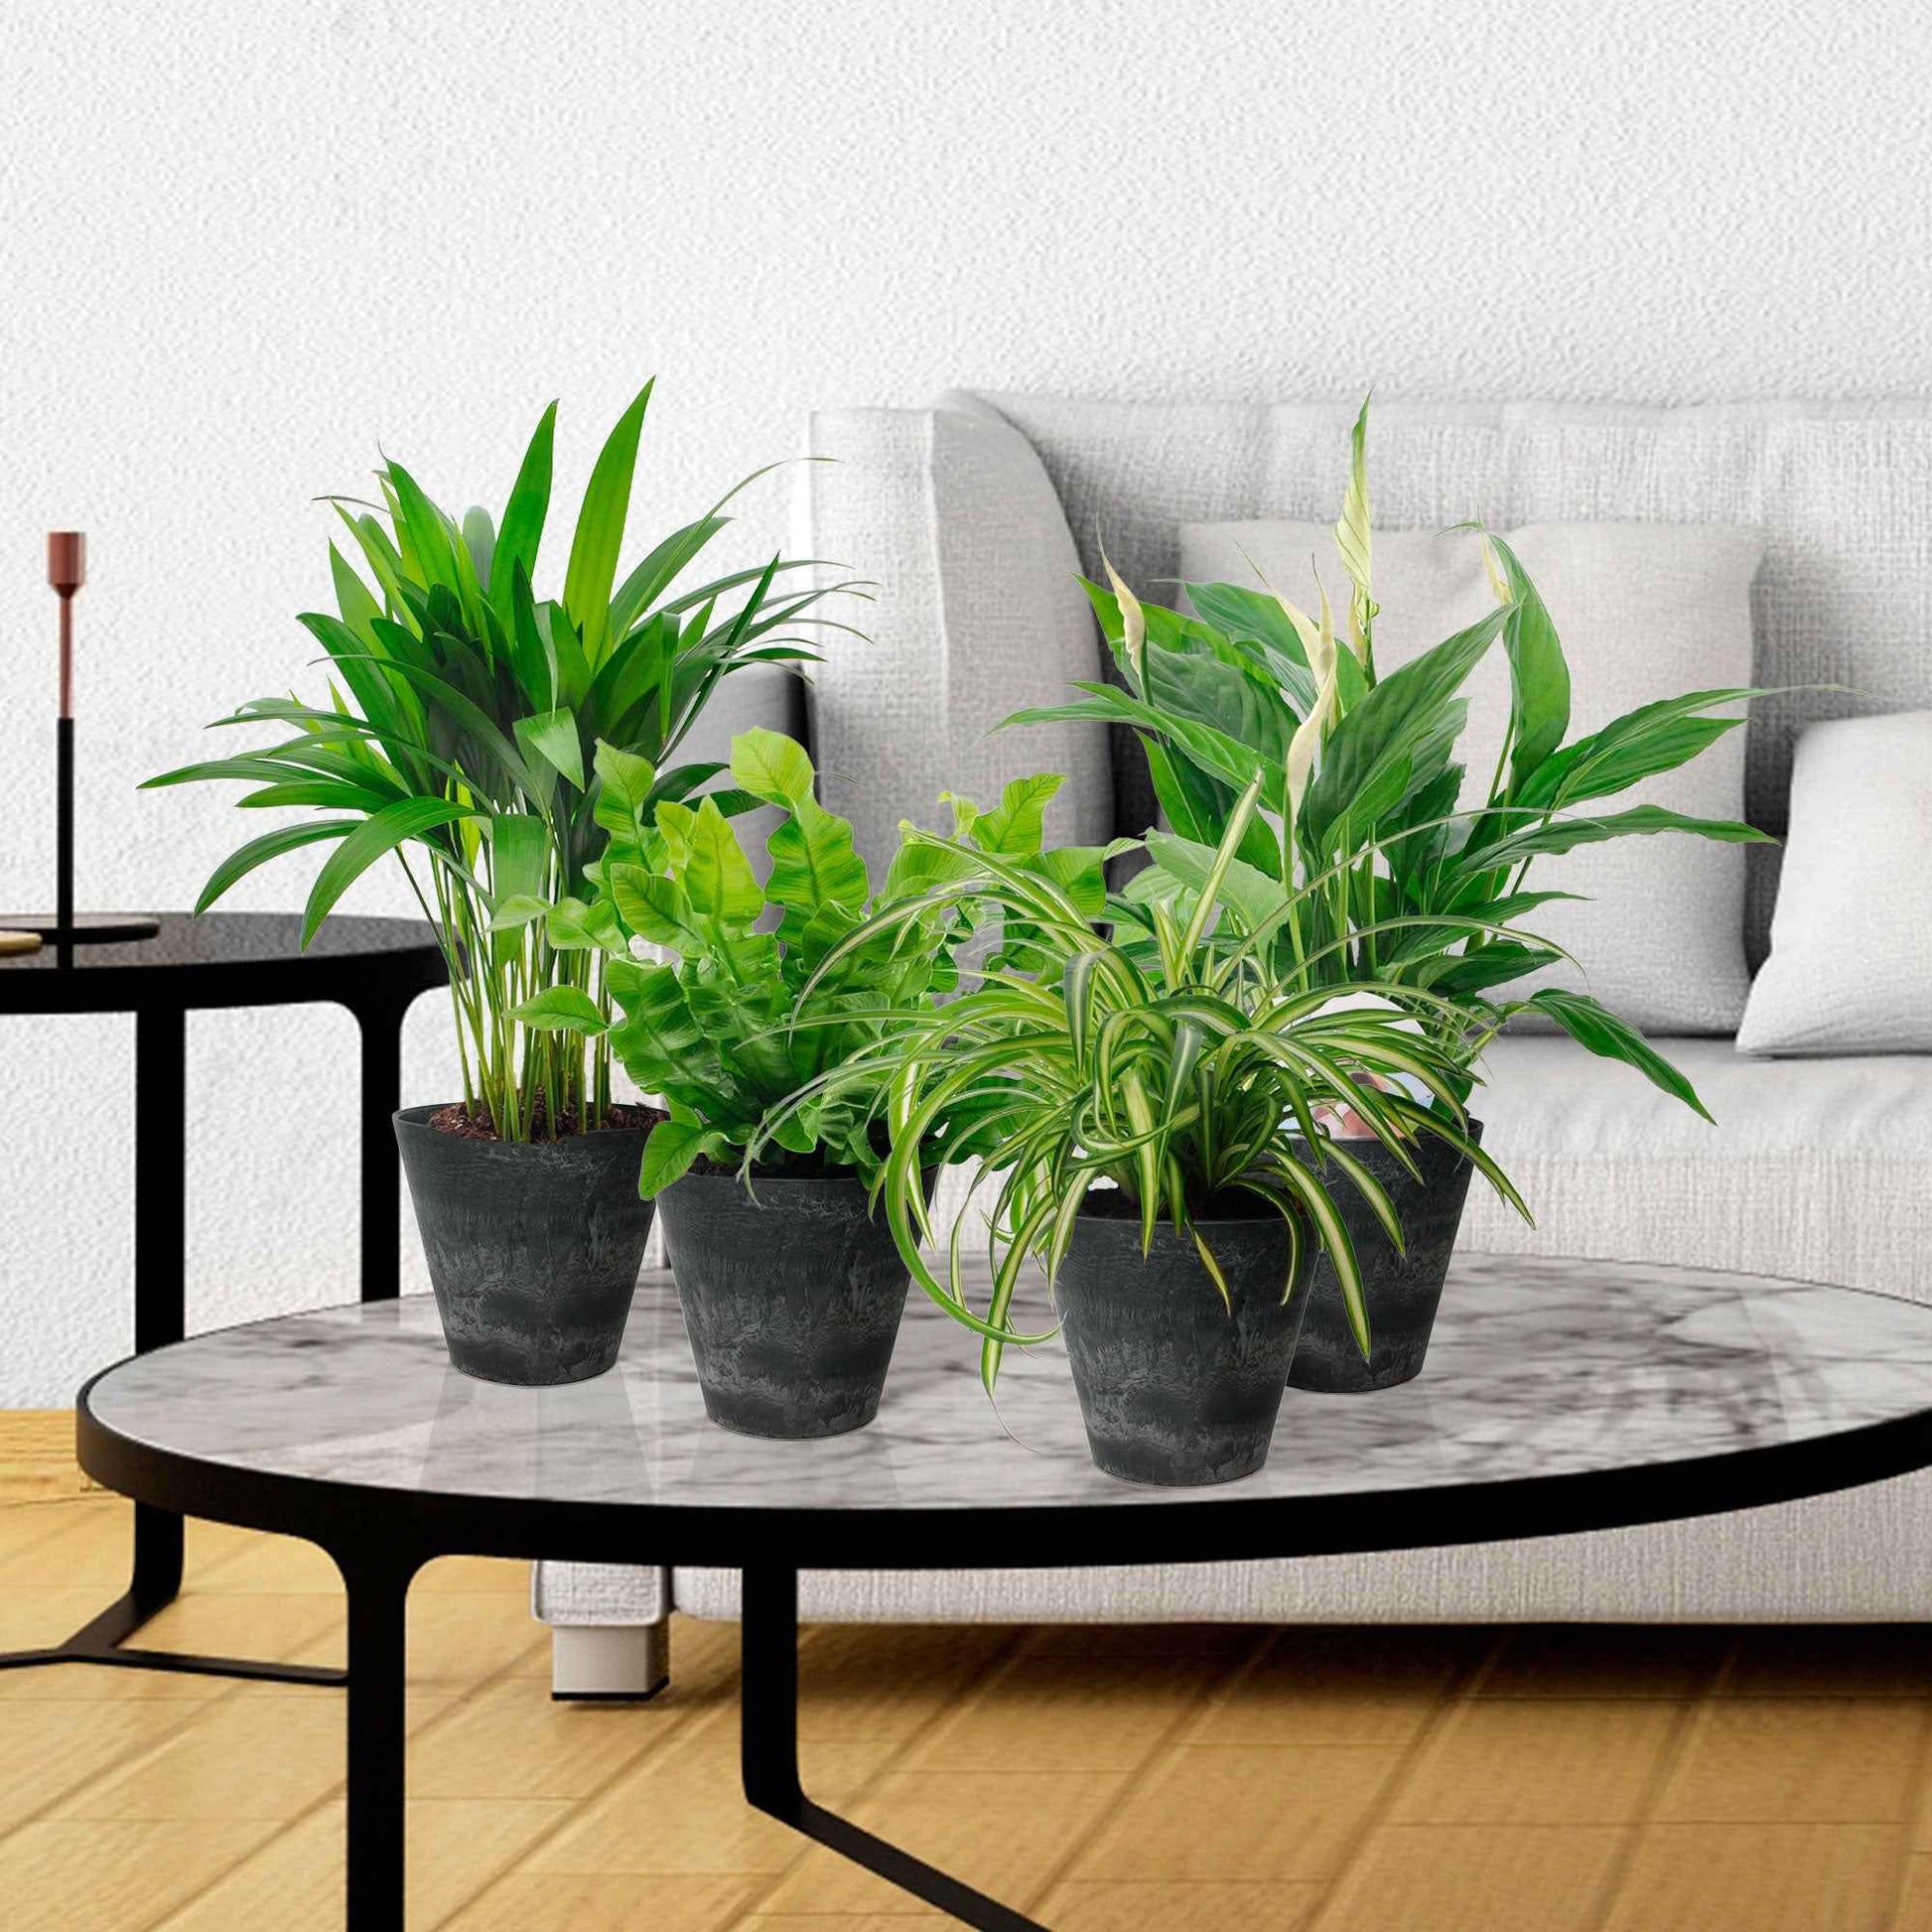 4x Plantes purificatrices d'air incl. Cache-pots Artstone Noir - Collection colorée